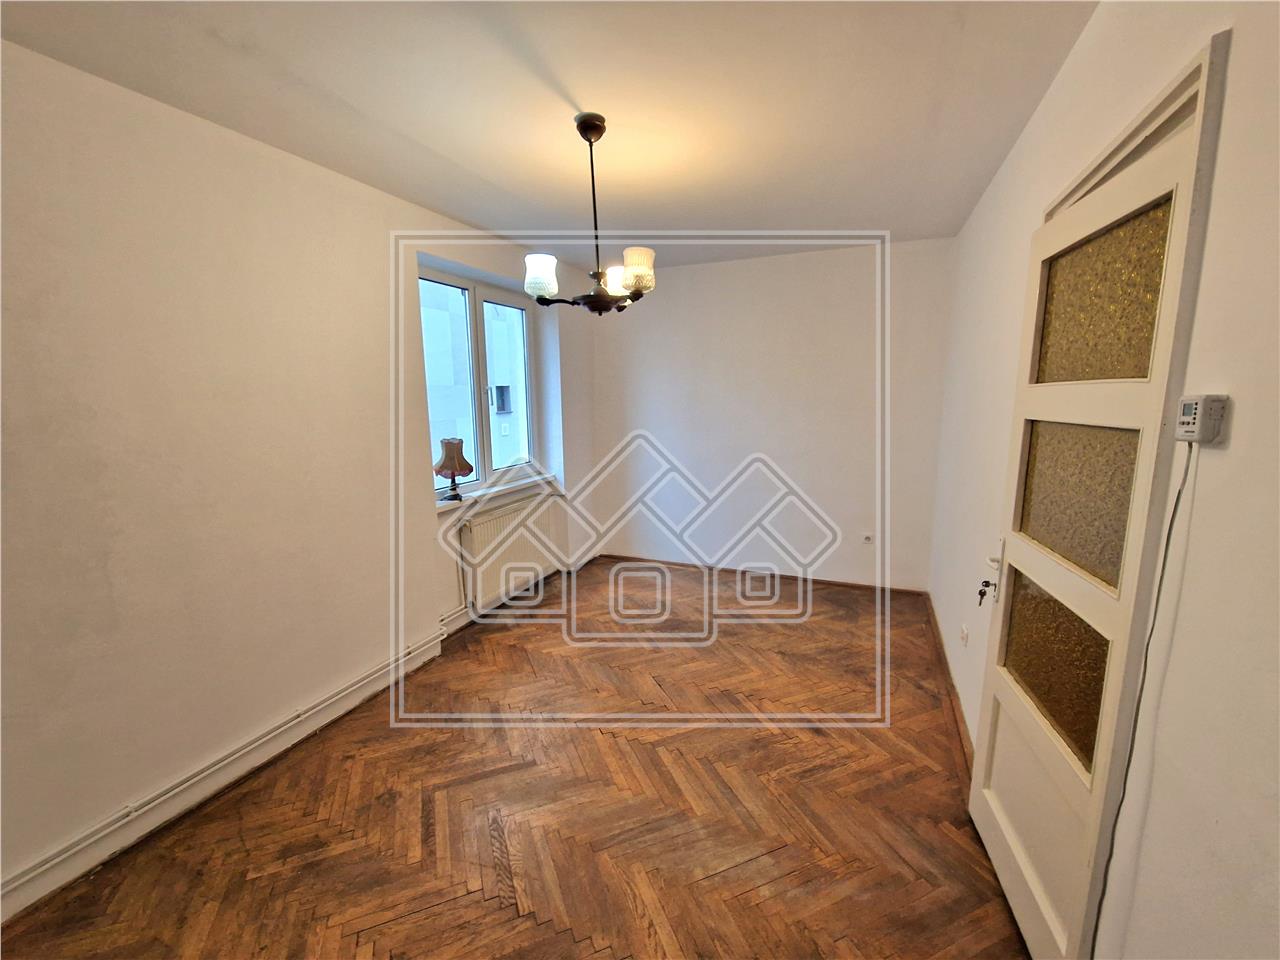 Apartament de vanzare in Sibiu - 3 camere si balcon - Calea Dumbravii